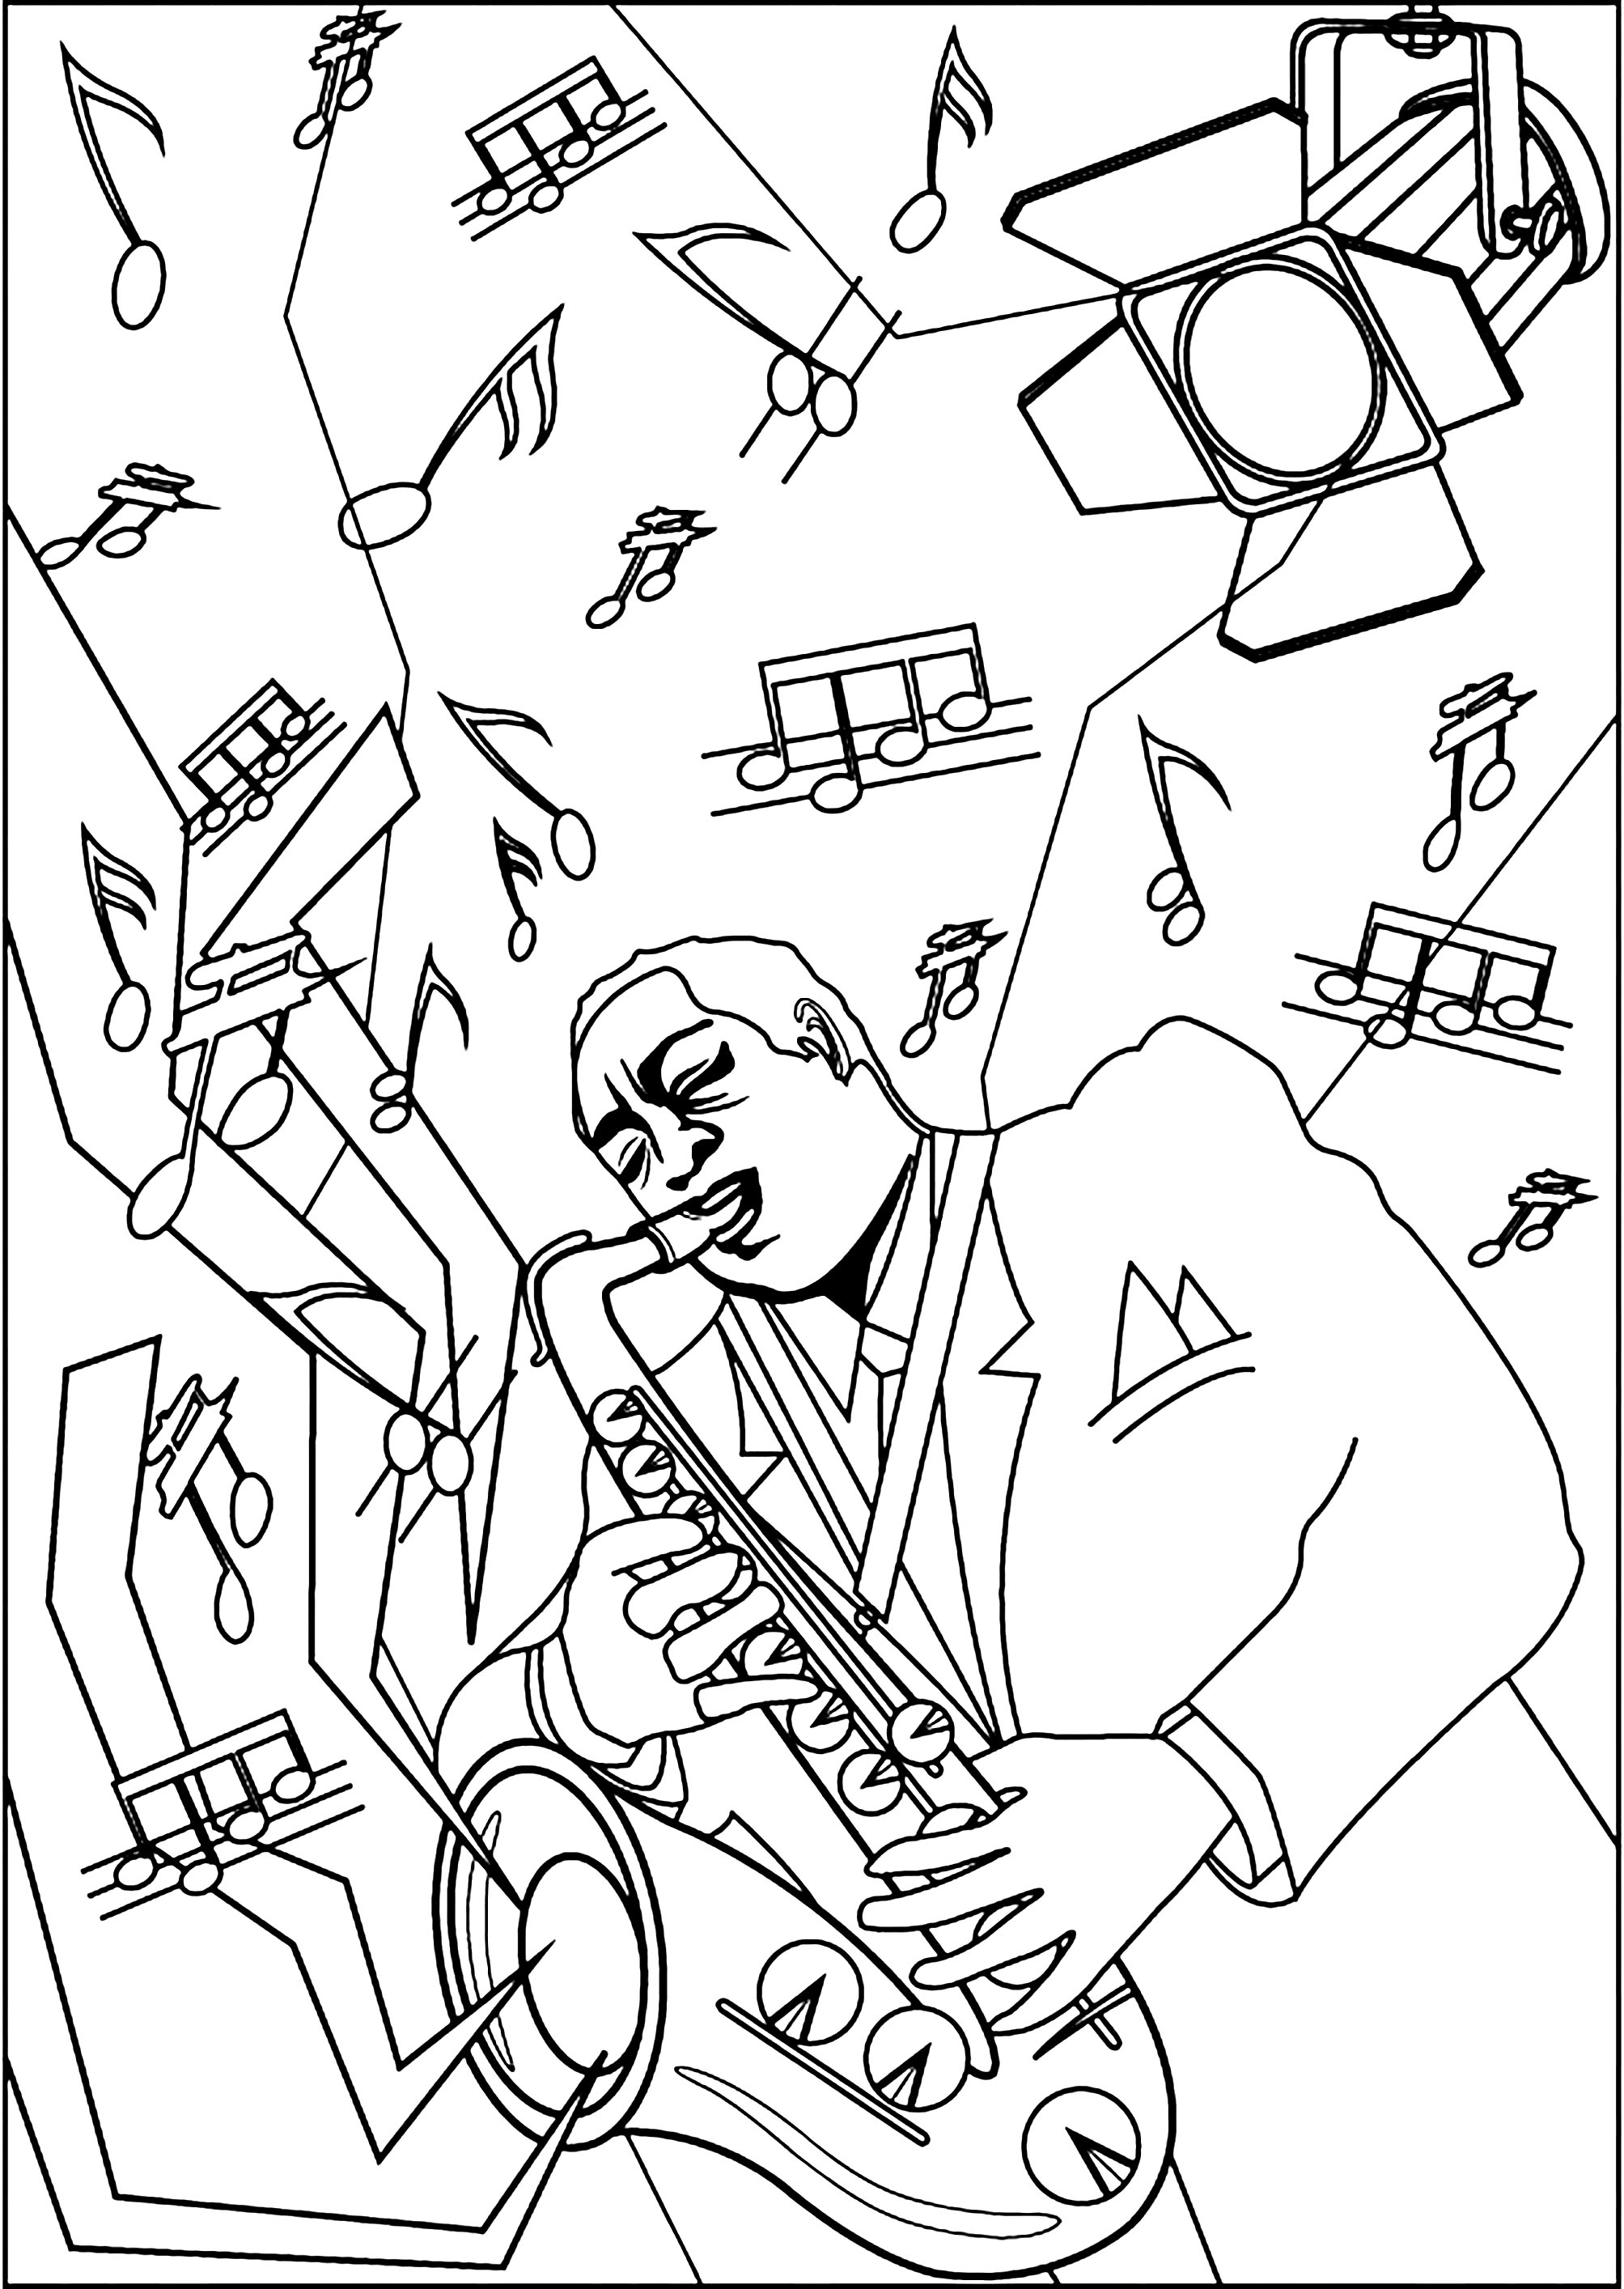 Saxophon spielender Musiker auf einer mit einem Lichtprojektor beleuchteten Bühne